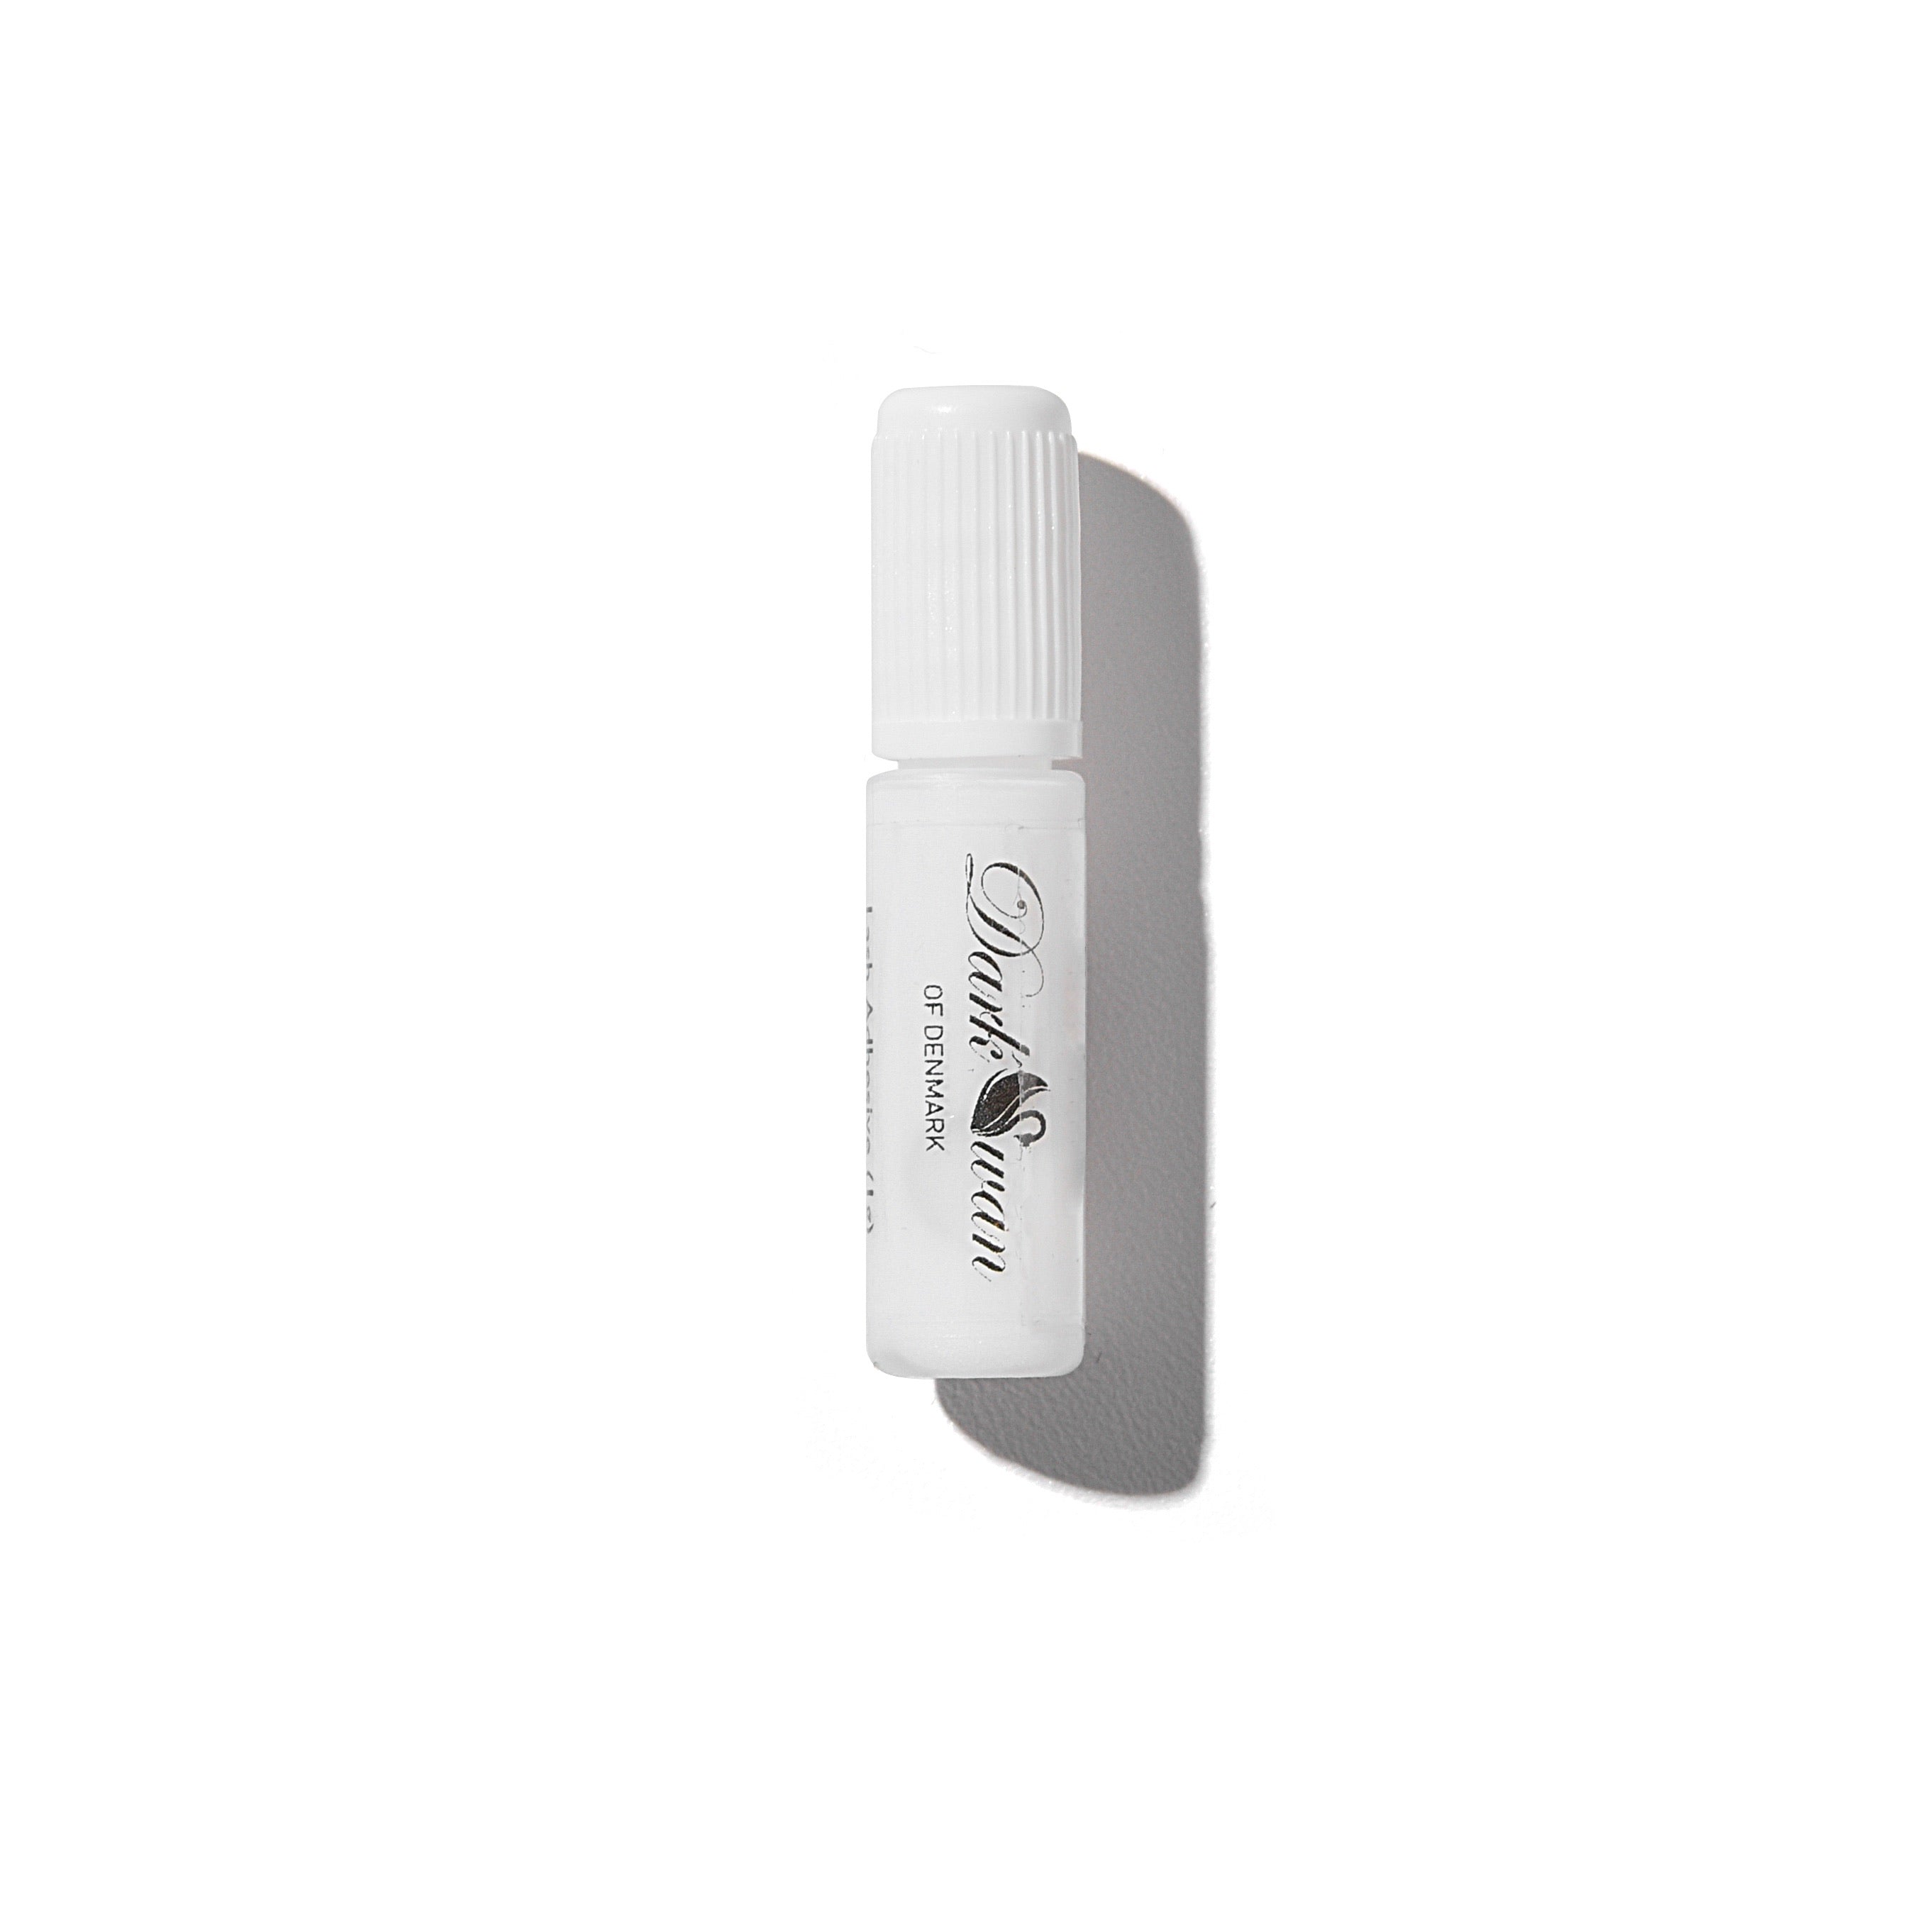 Mini Eyelash Adhesive 1g (White/Transparent)